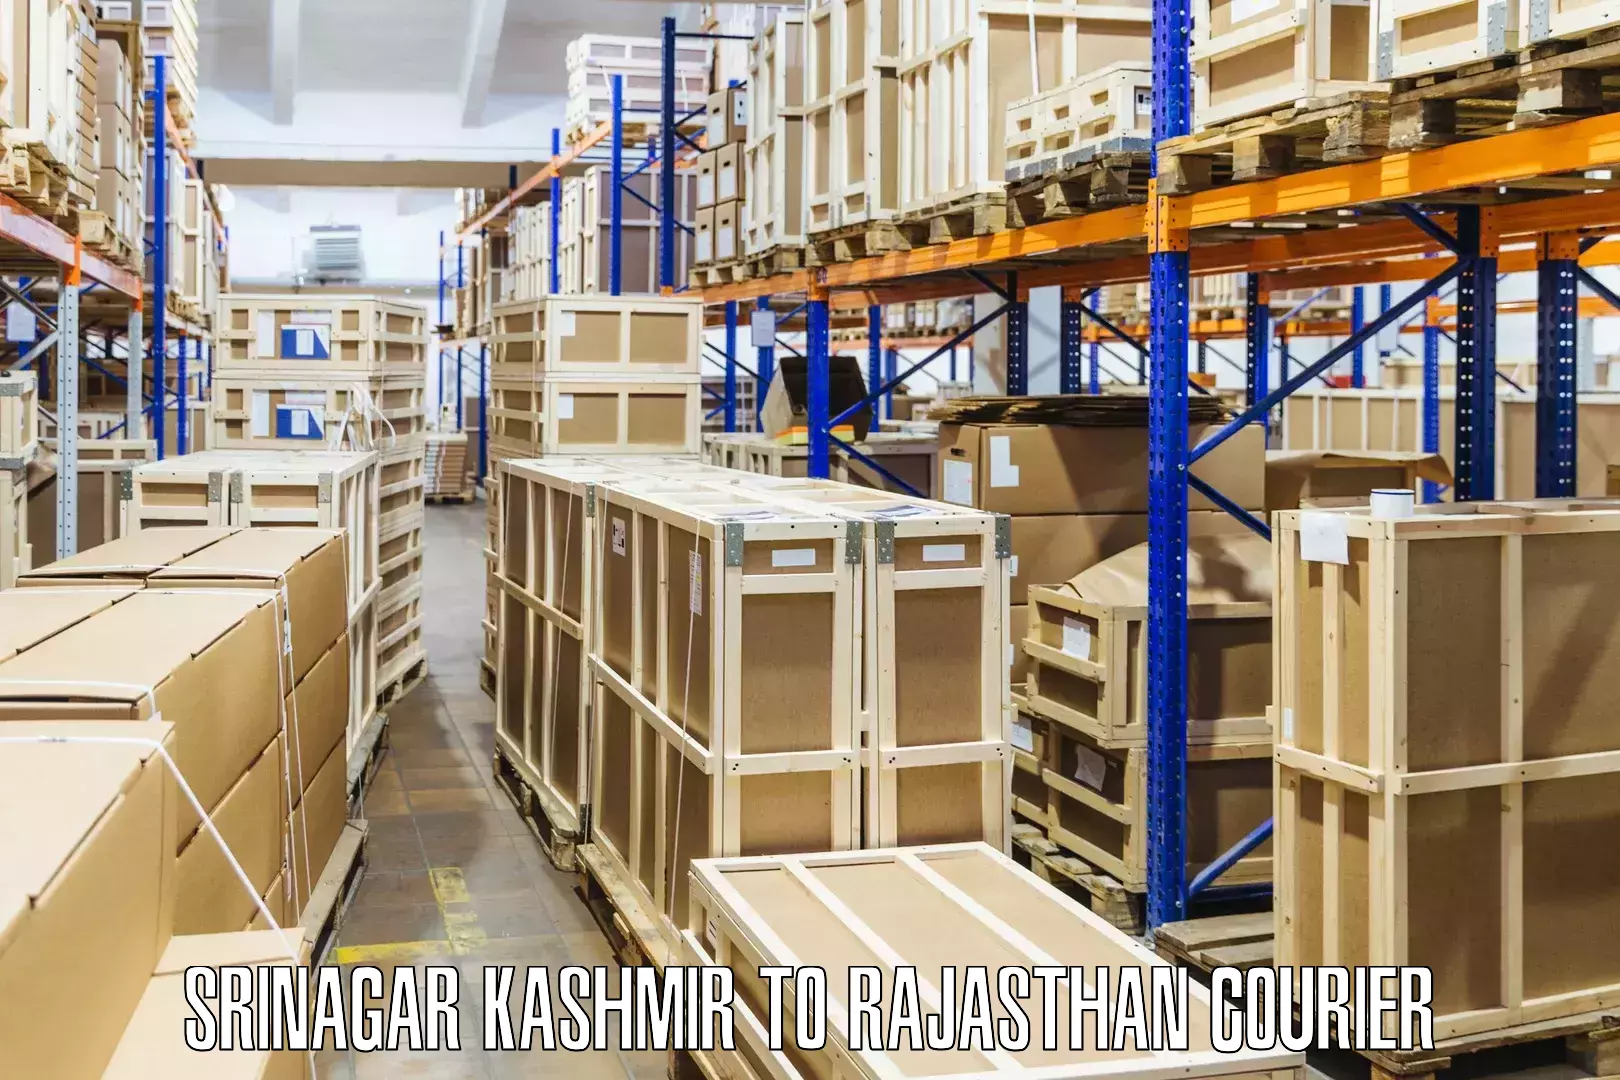 Courier insurance Srinagar Kashmir to Jhalawar